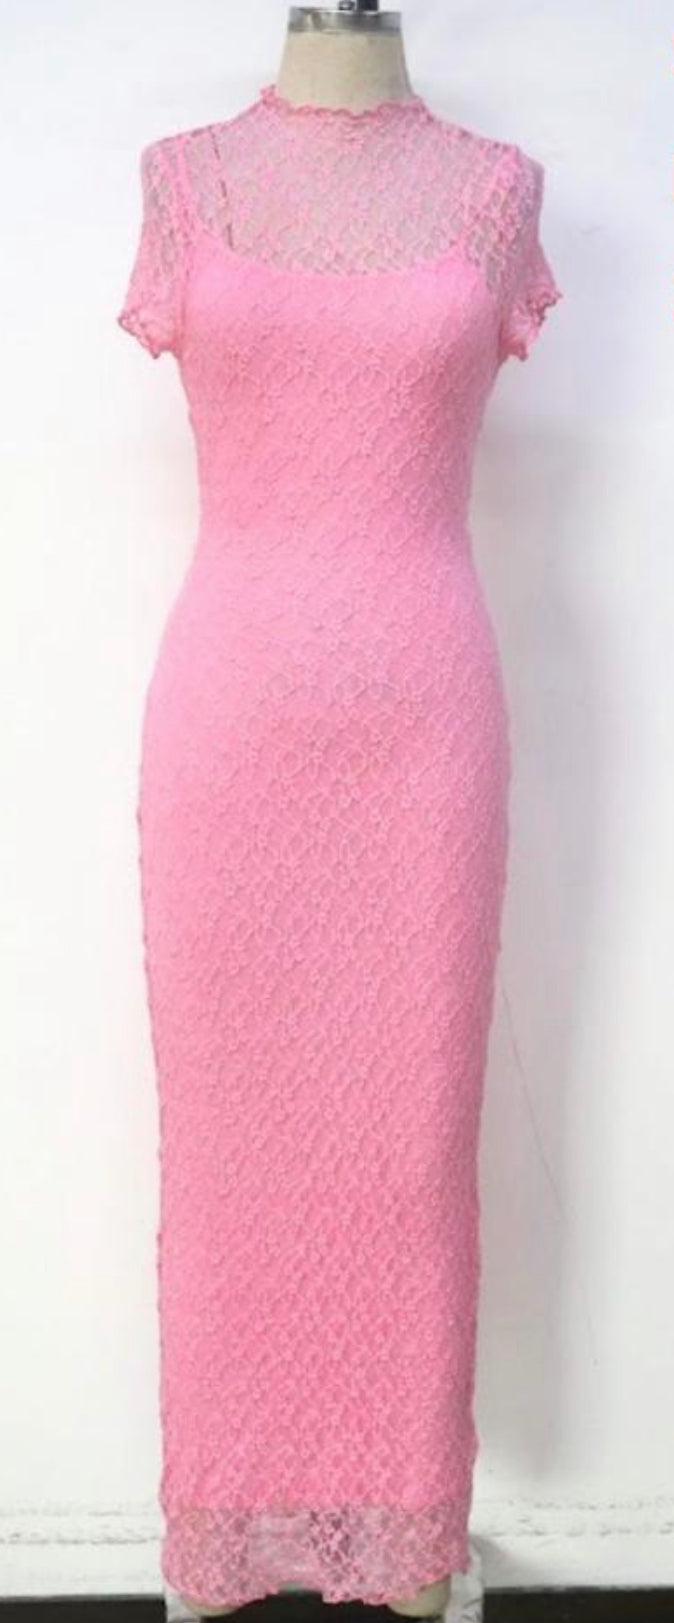 Romance 2pc lace dress - pink